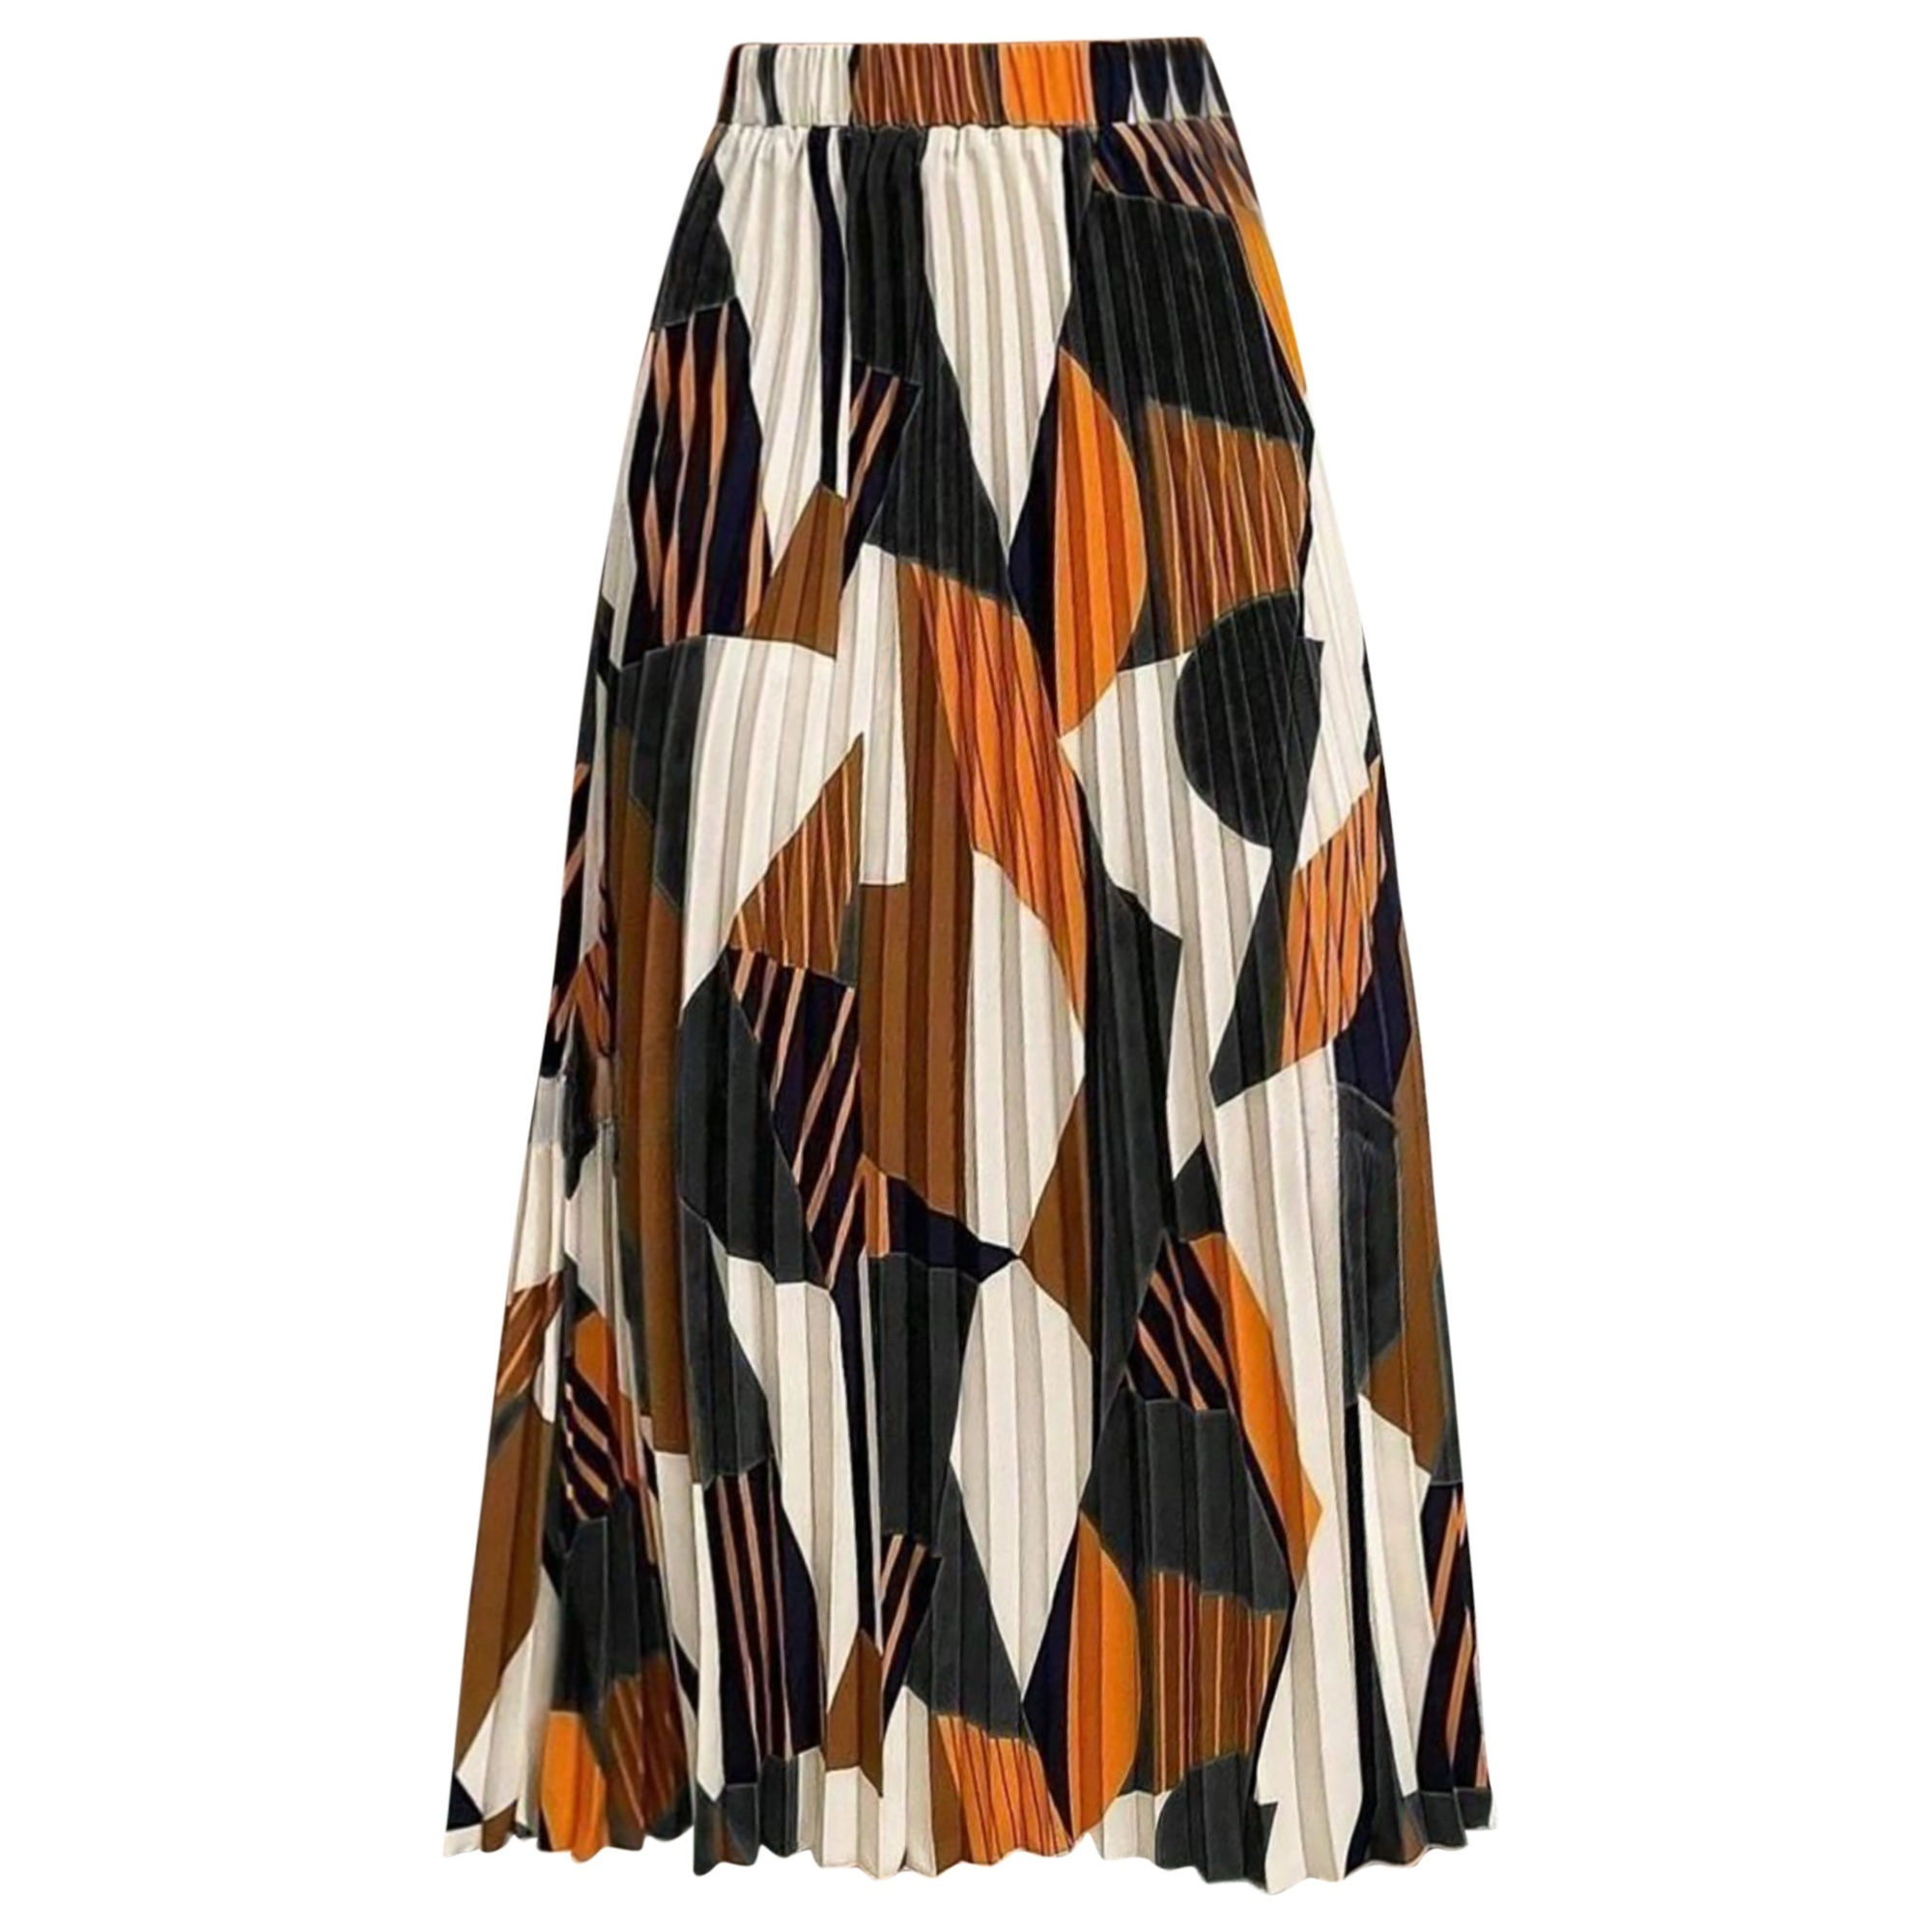 

Color Block Elastic High Waist Skirt, Elegant A-line Pleat Skirt For Spring & Summer, Women's Clothing